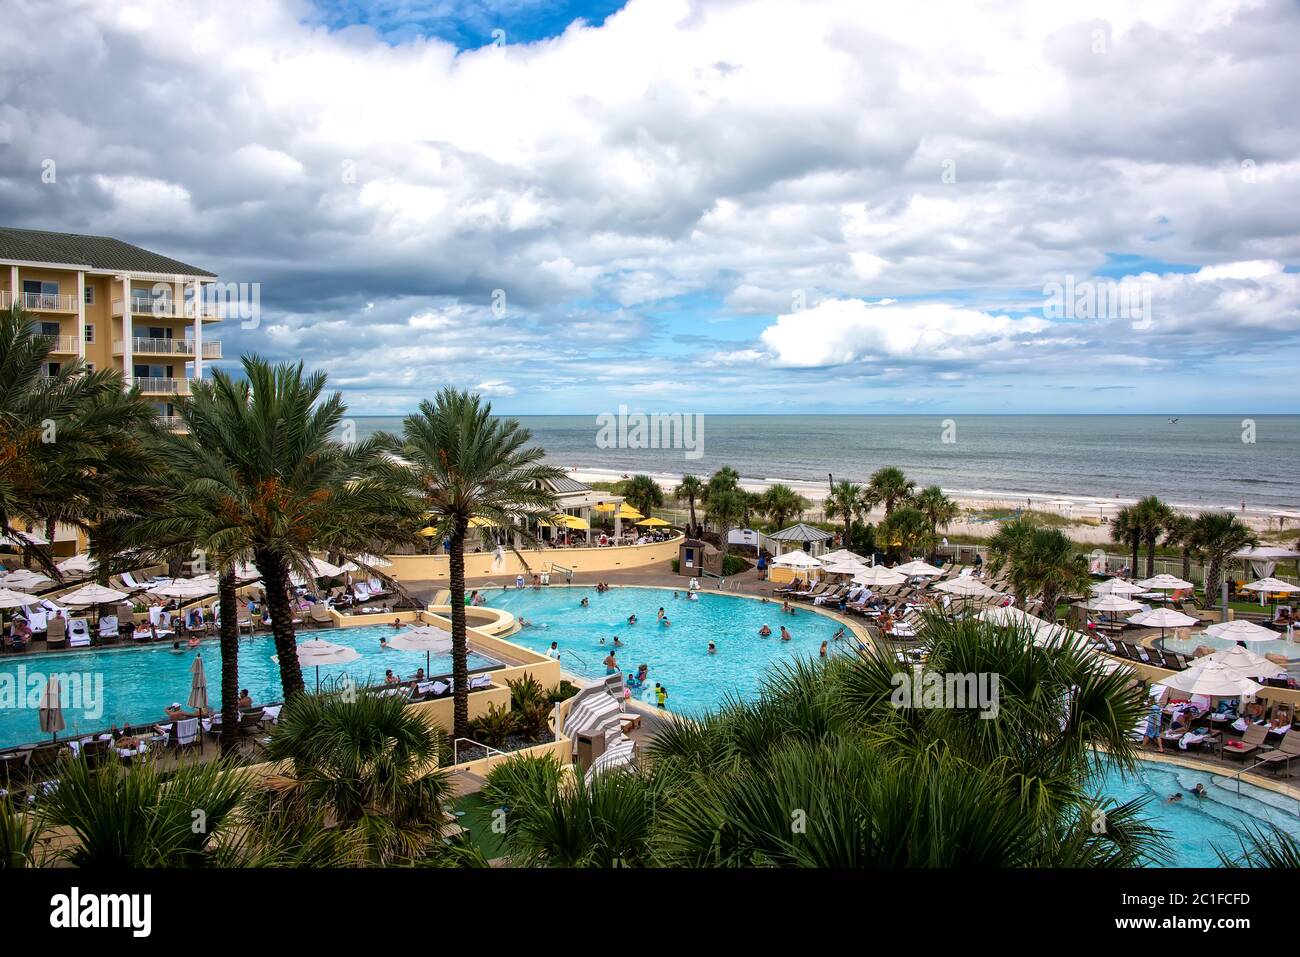 Amelia Island, Florida - 16. August 2019: Touristen genießen einen Tag im Pool in einem Luxus-Resort-Hotel am Fernandina Beach auf der wunderschönen Amelia Island Stockfoto